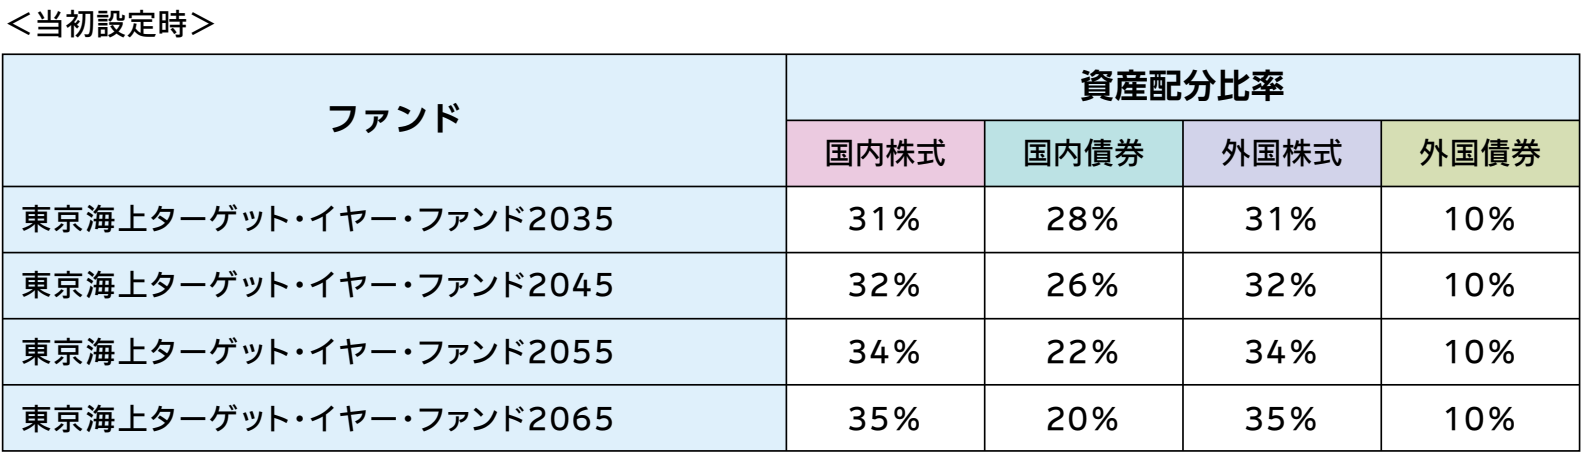 東京海上ターゲットイヤーファンド資産割合